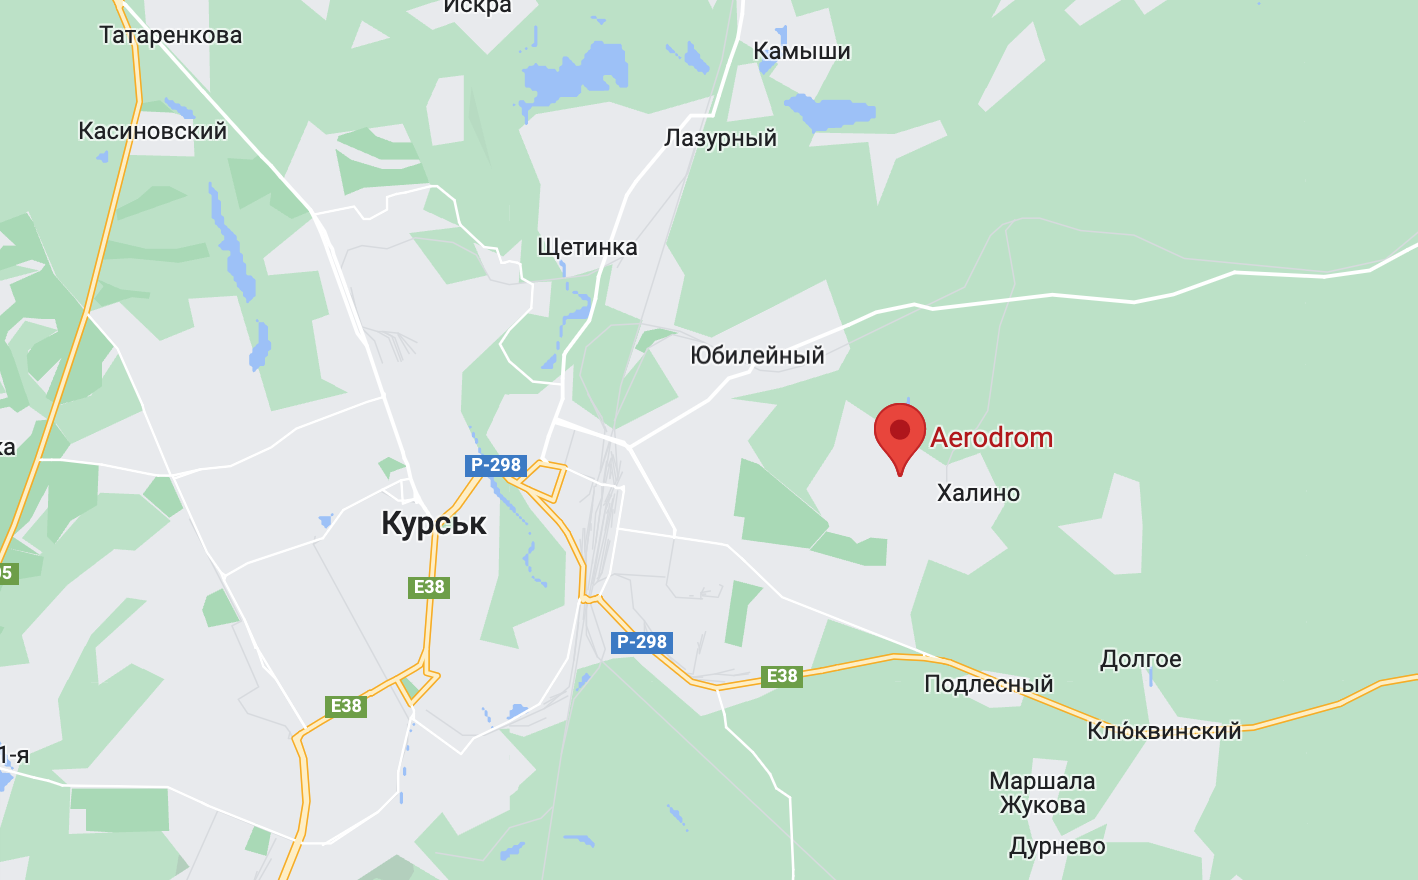 Взрывы в Курске - новая порция хлопка в российском Курске произошла ночью 25 декабря